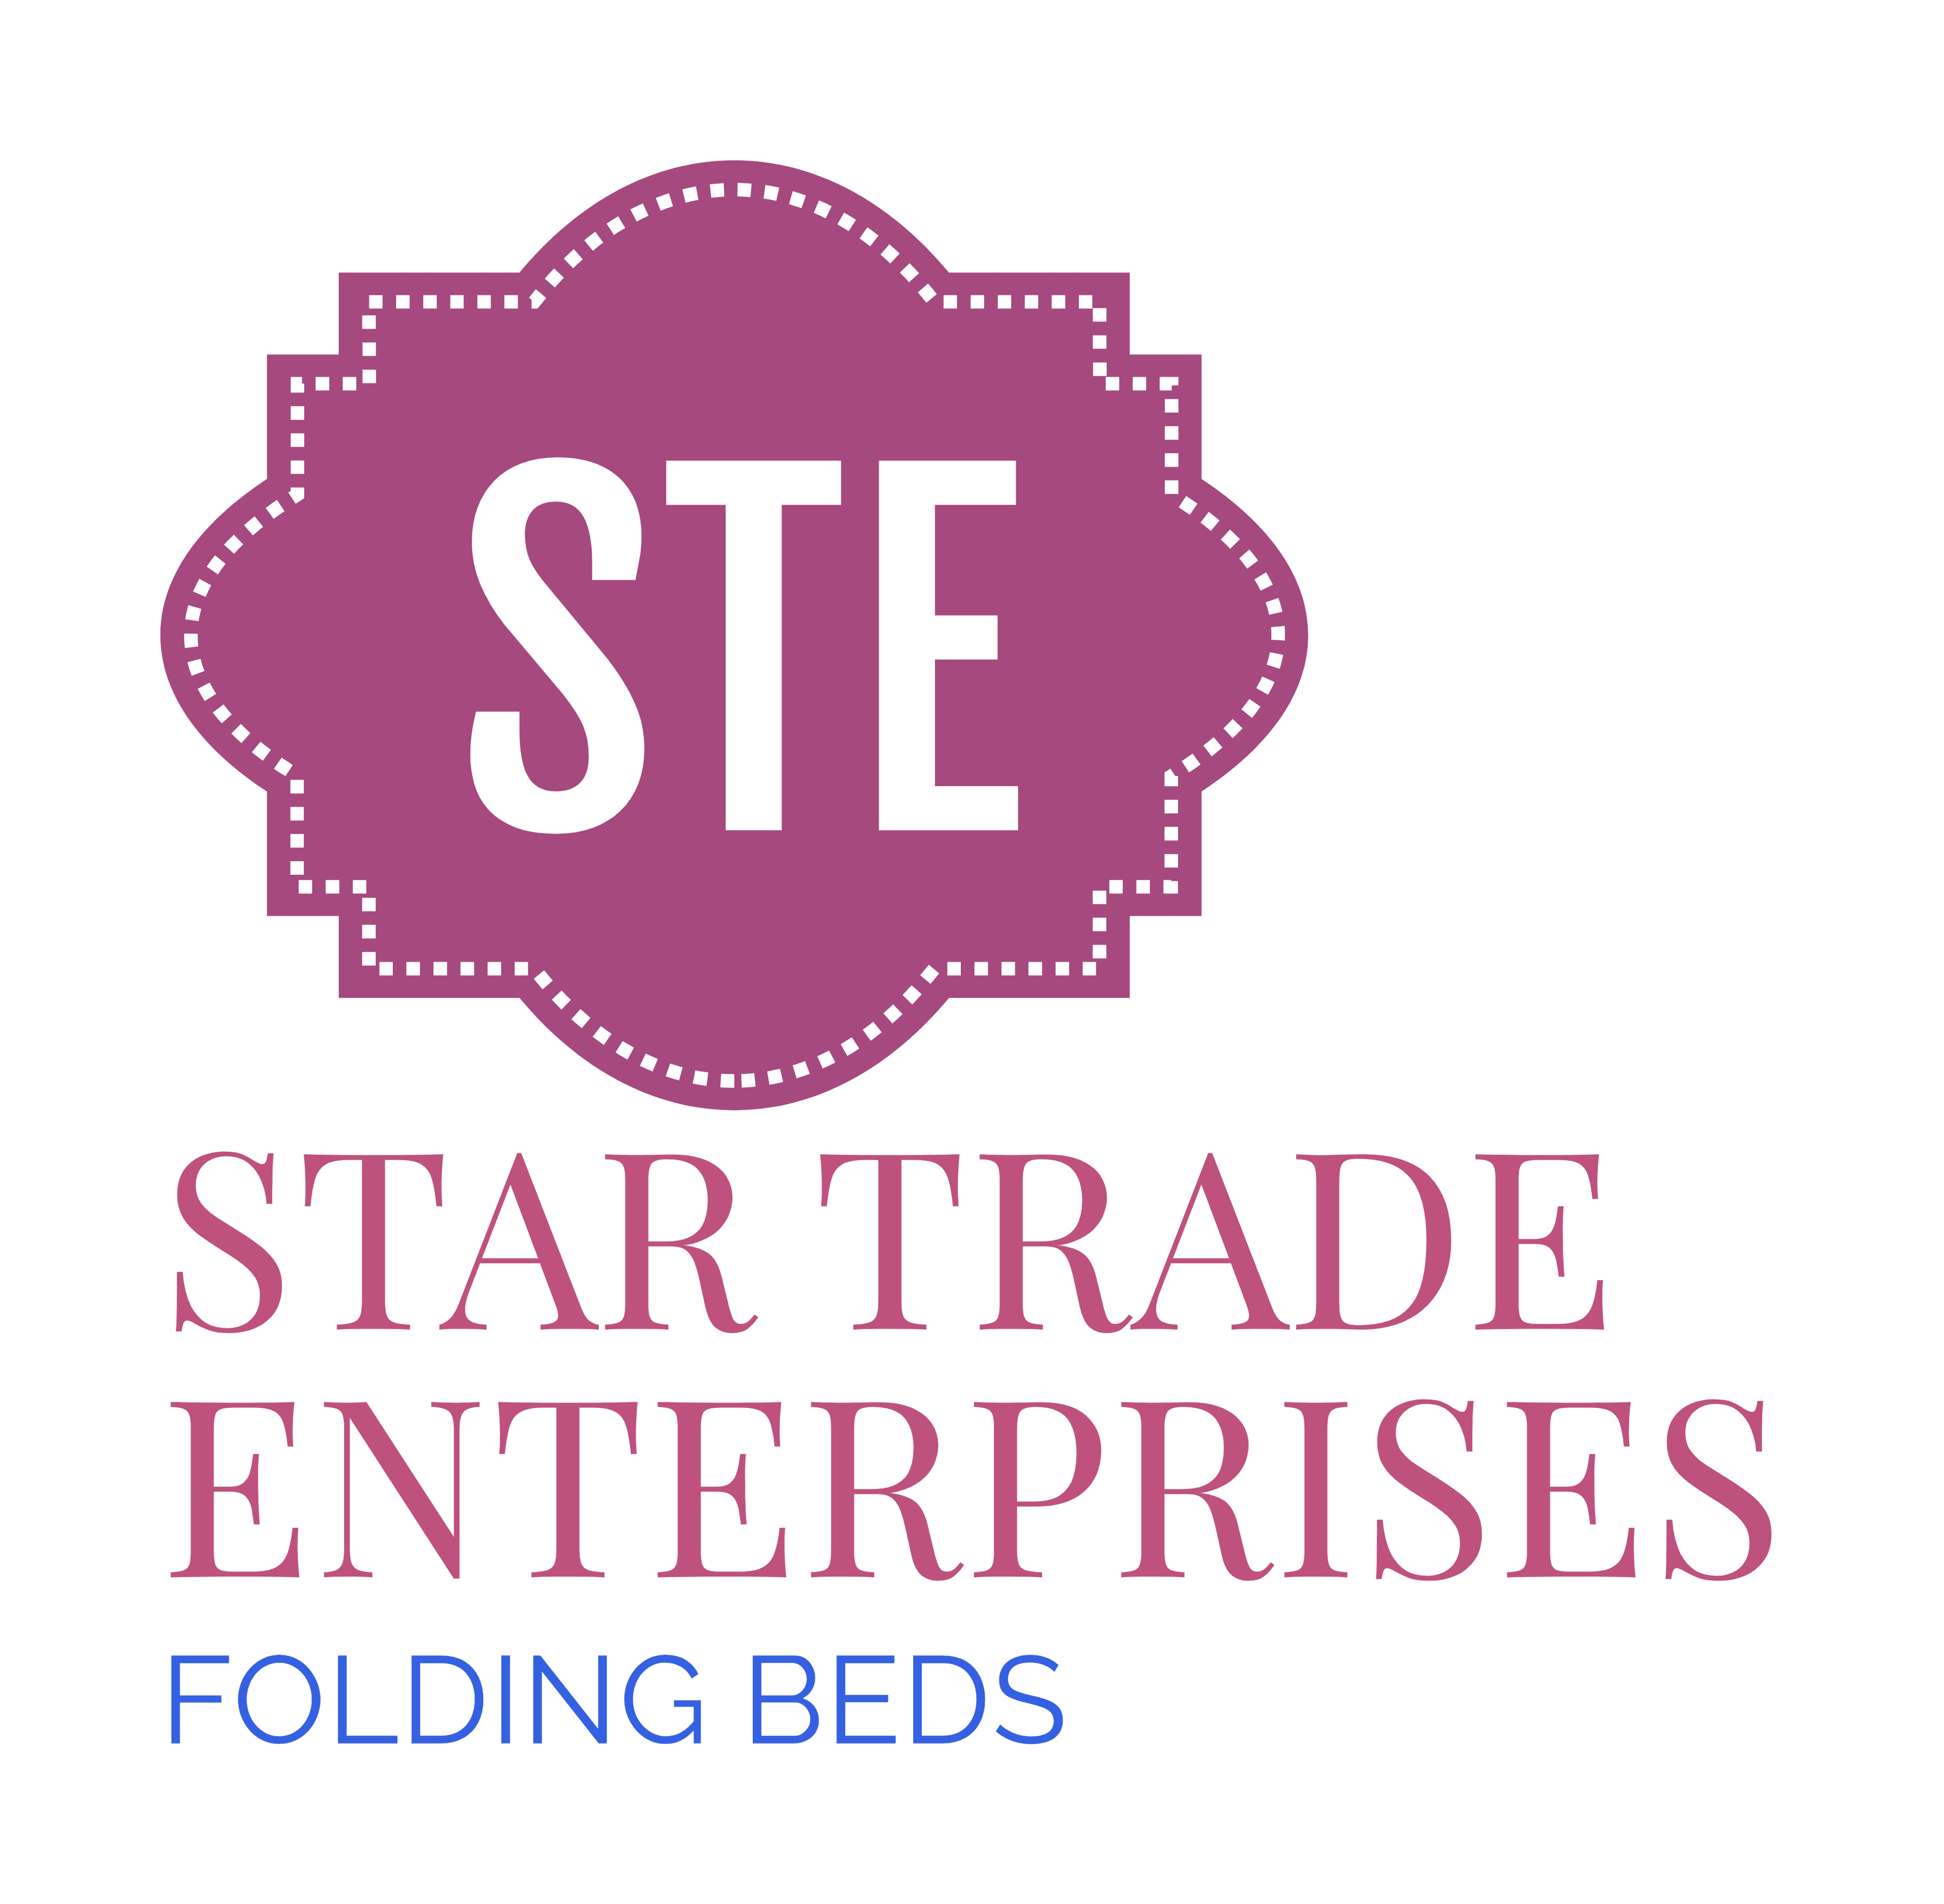 Star Trade Enterprise